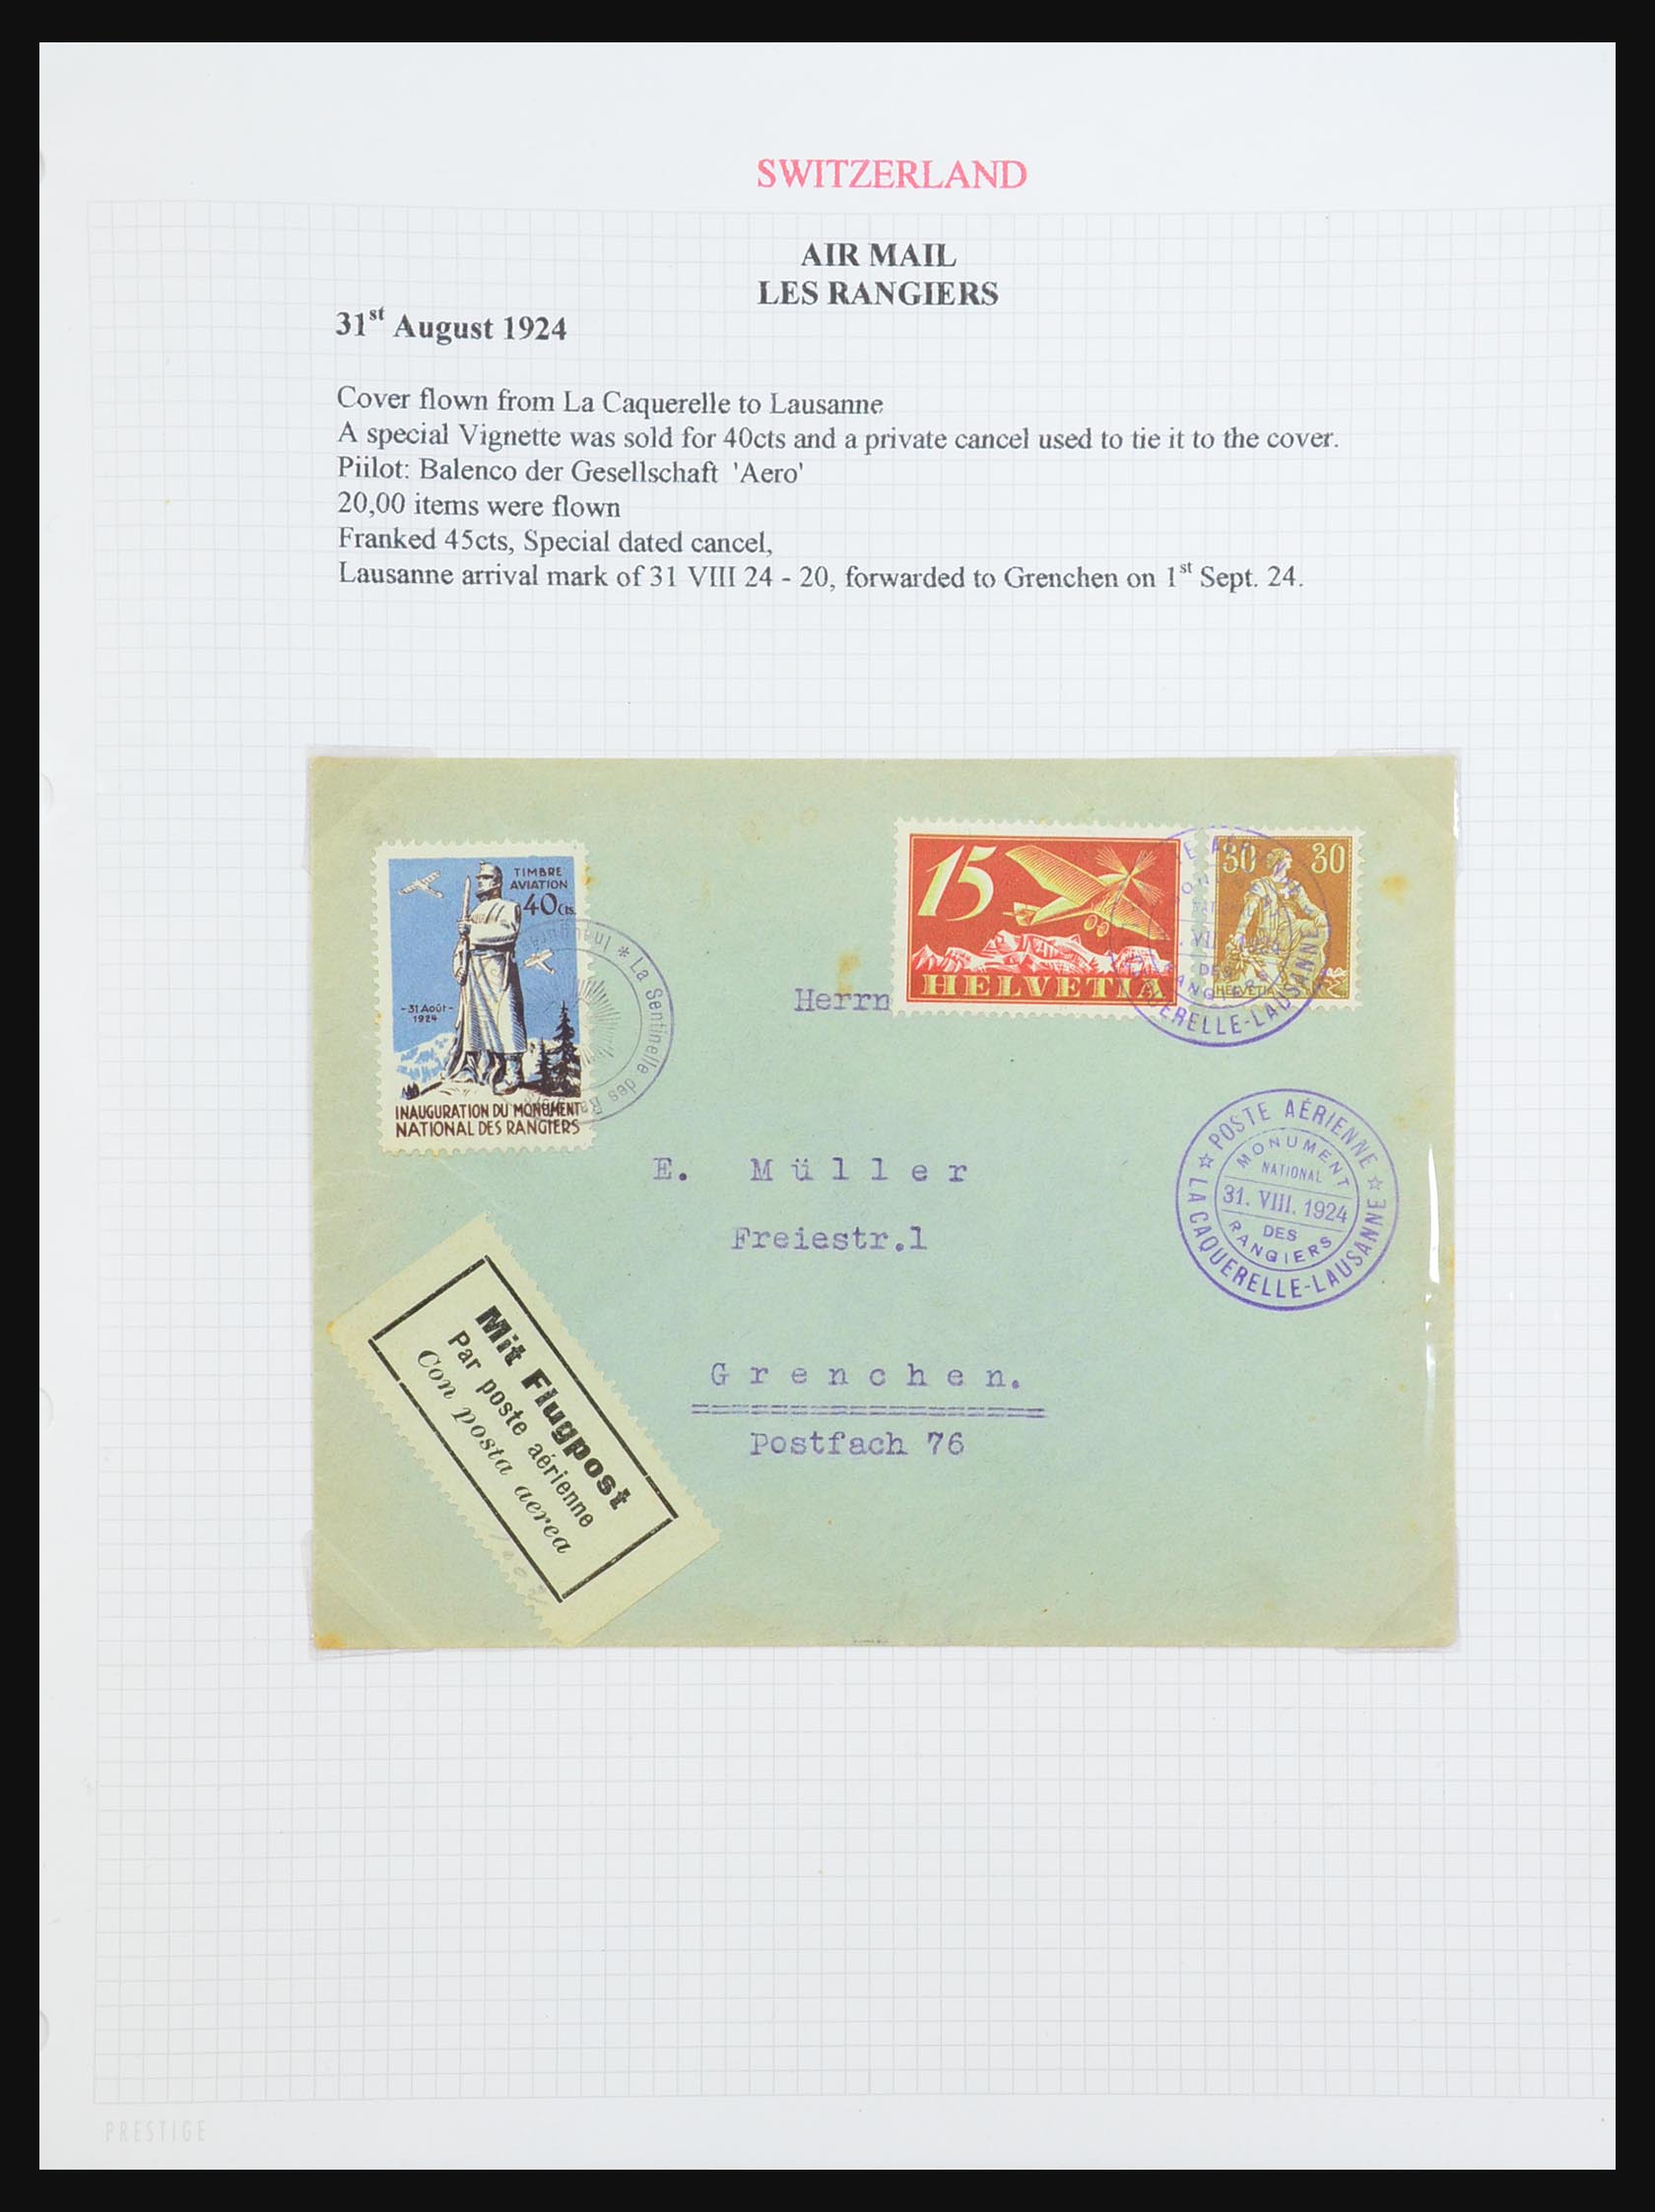 31444 004 - 31444 Switzerland airmail covers 1922-1946.